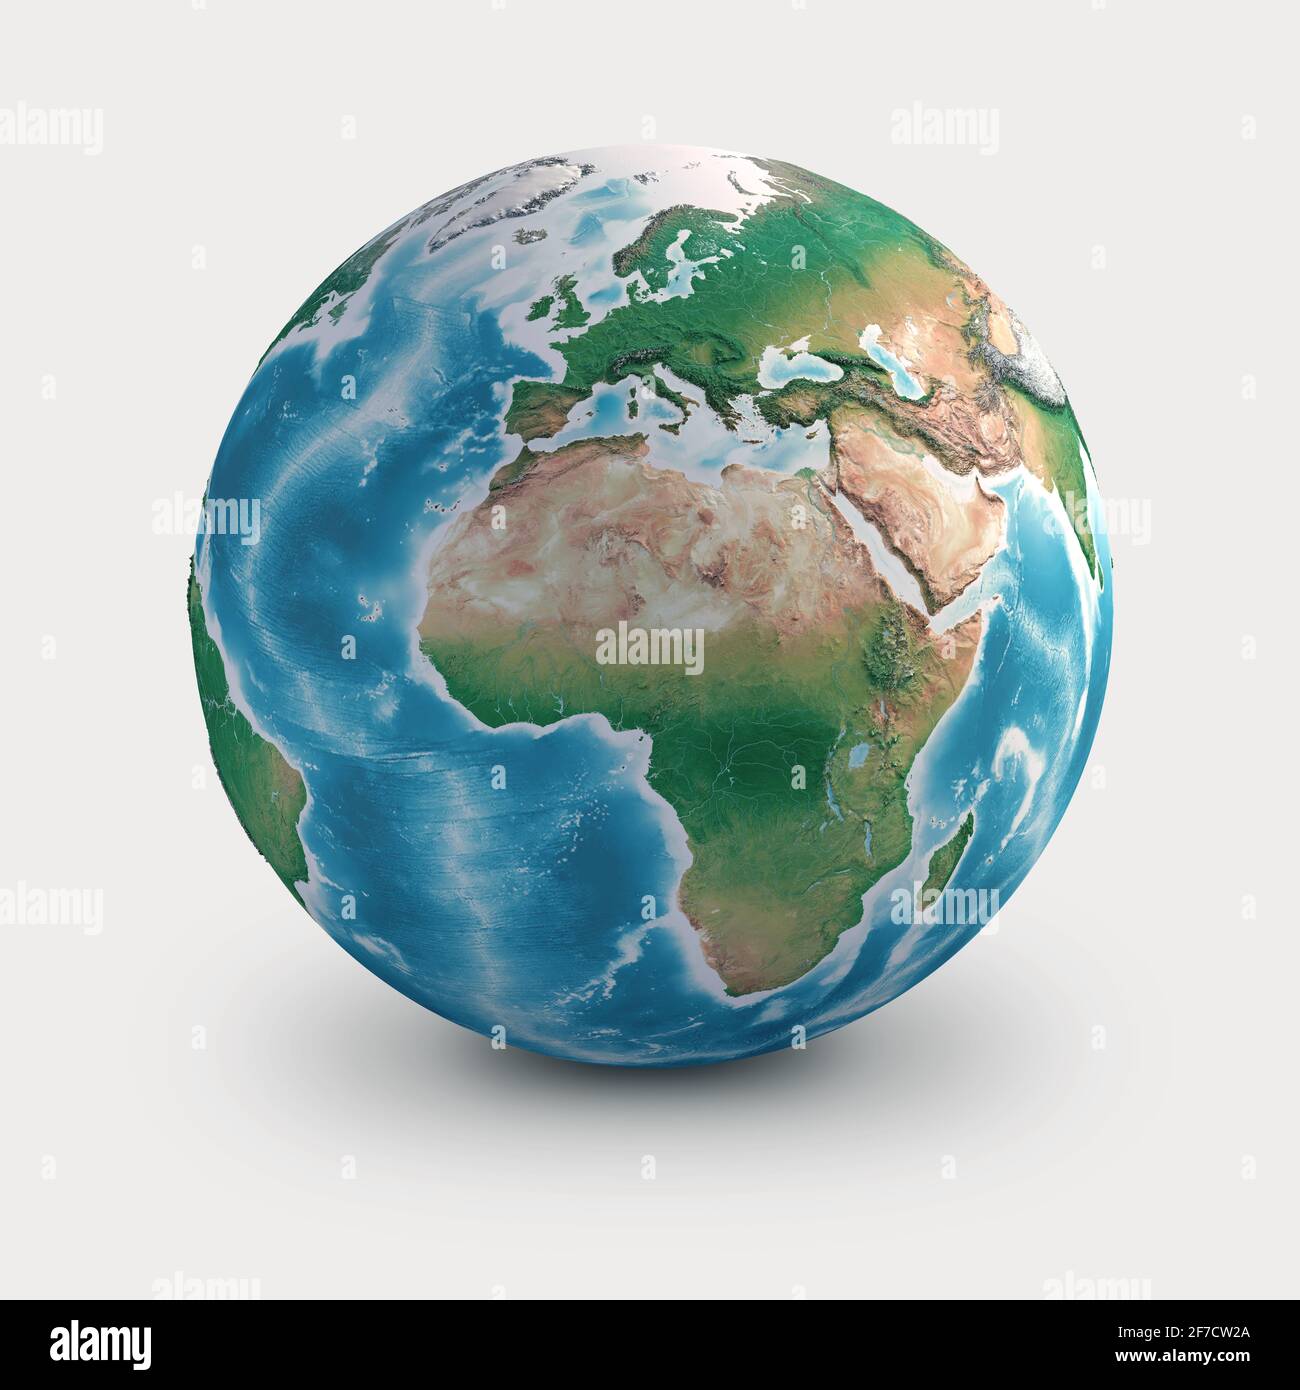 Pianeta Terra globo. Geografia del mondo dallo spazio, focalizzata su Europa, Africa e Medio Oriente - elementi forniti dalla NASA Foto Stock